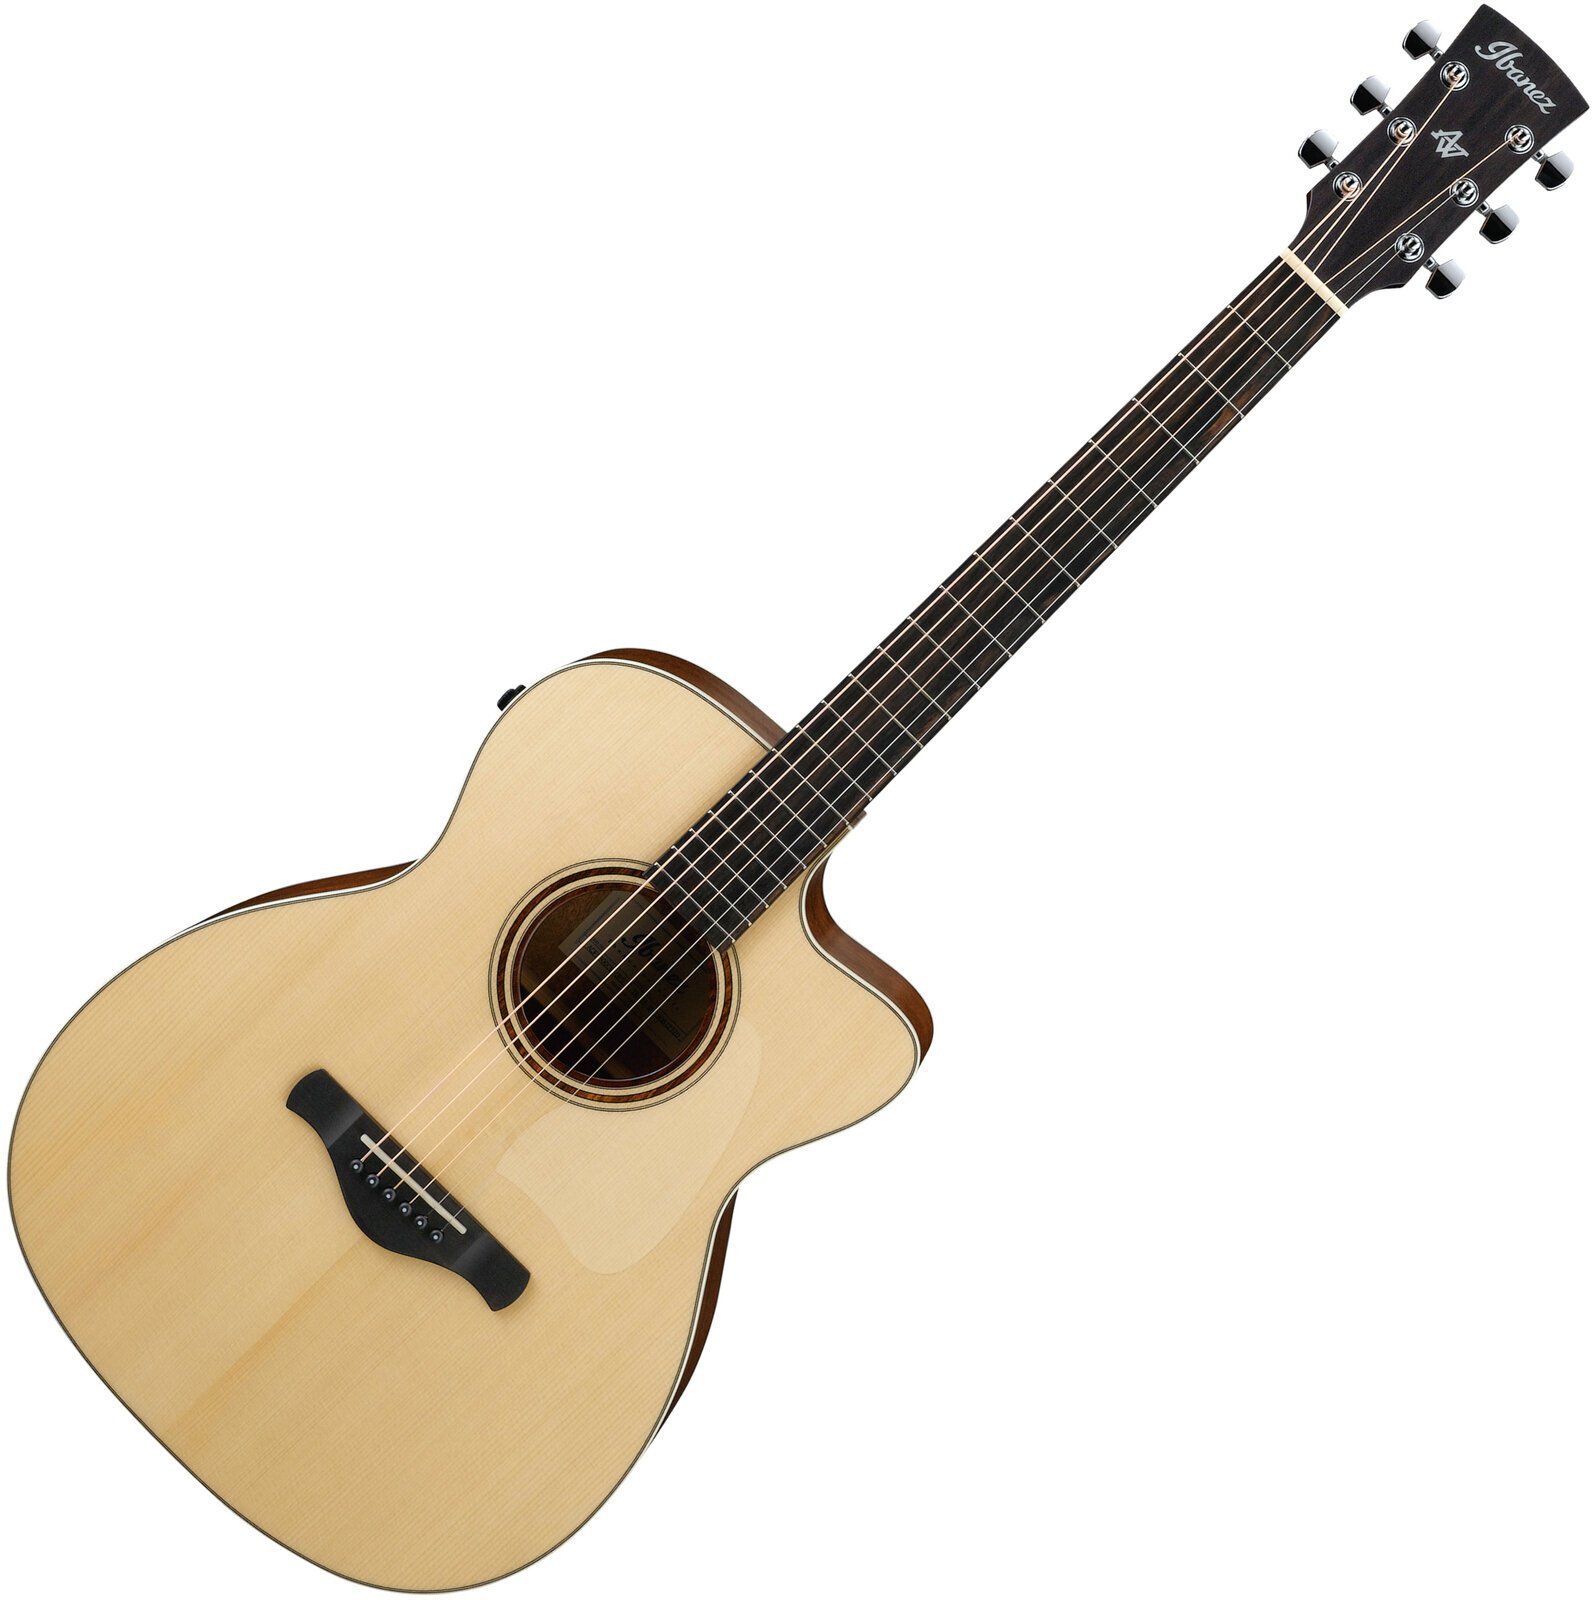 Jumbo elektro-akoestische gitaar Ibanez ACFS300CE-OPS Natural